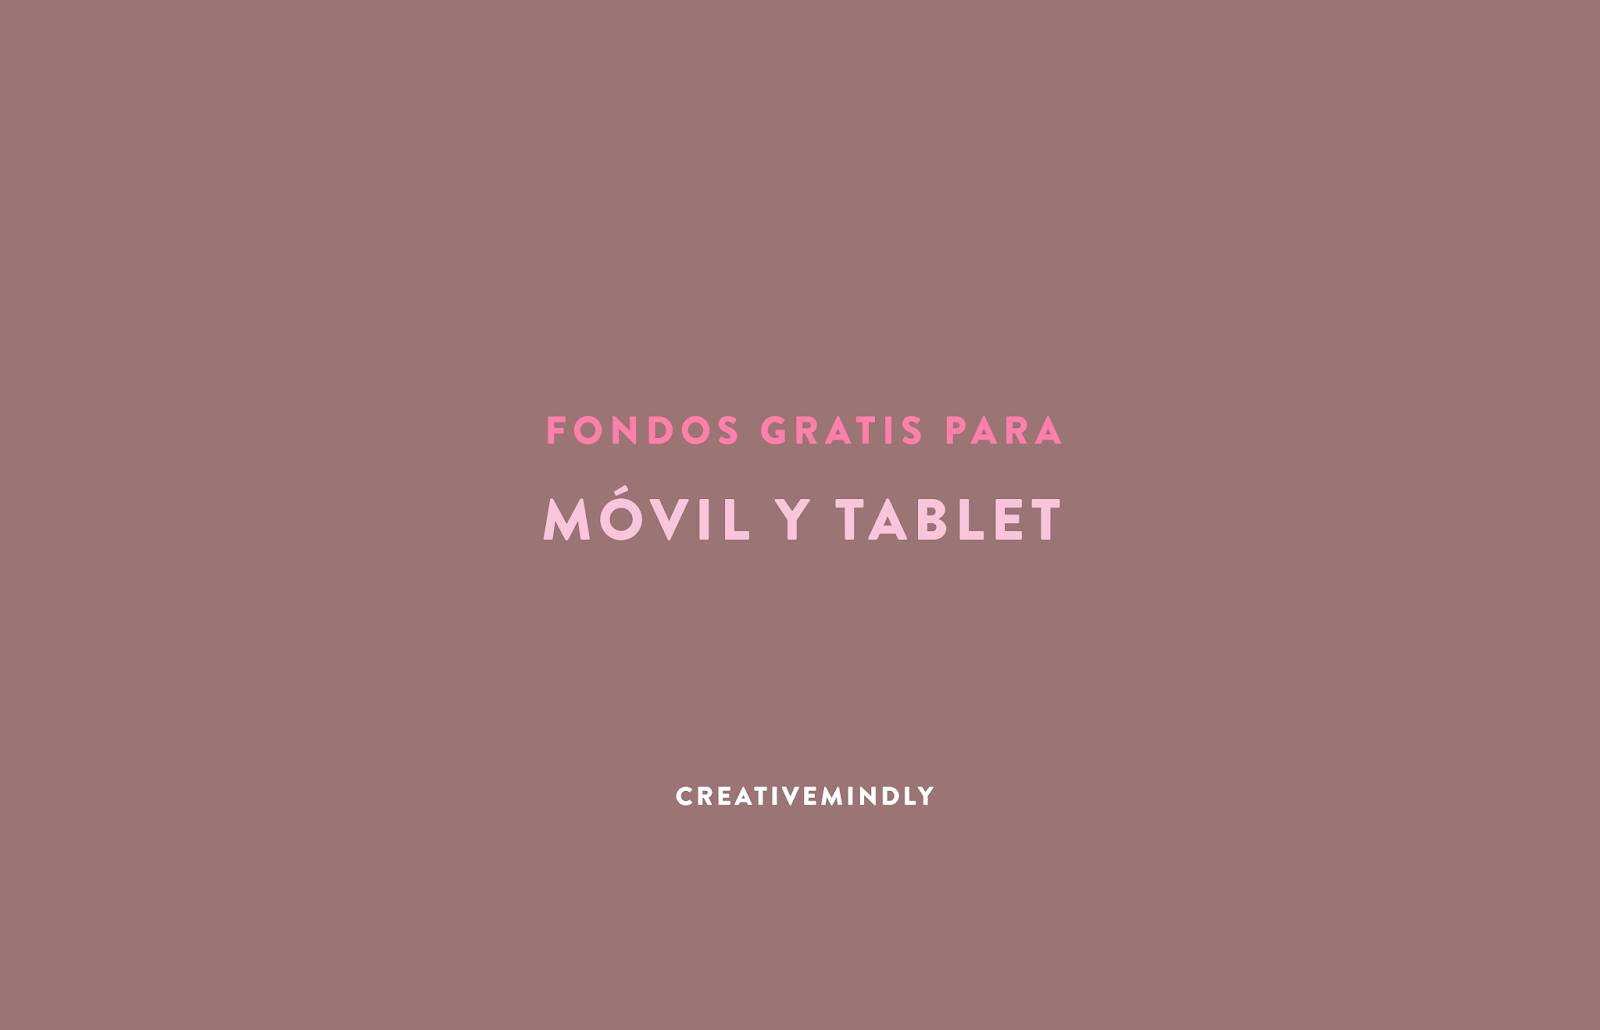 Creative Mindly: Fondos gratis y bonitos para móvil y tablet